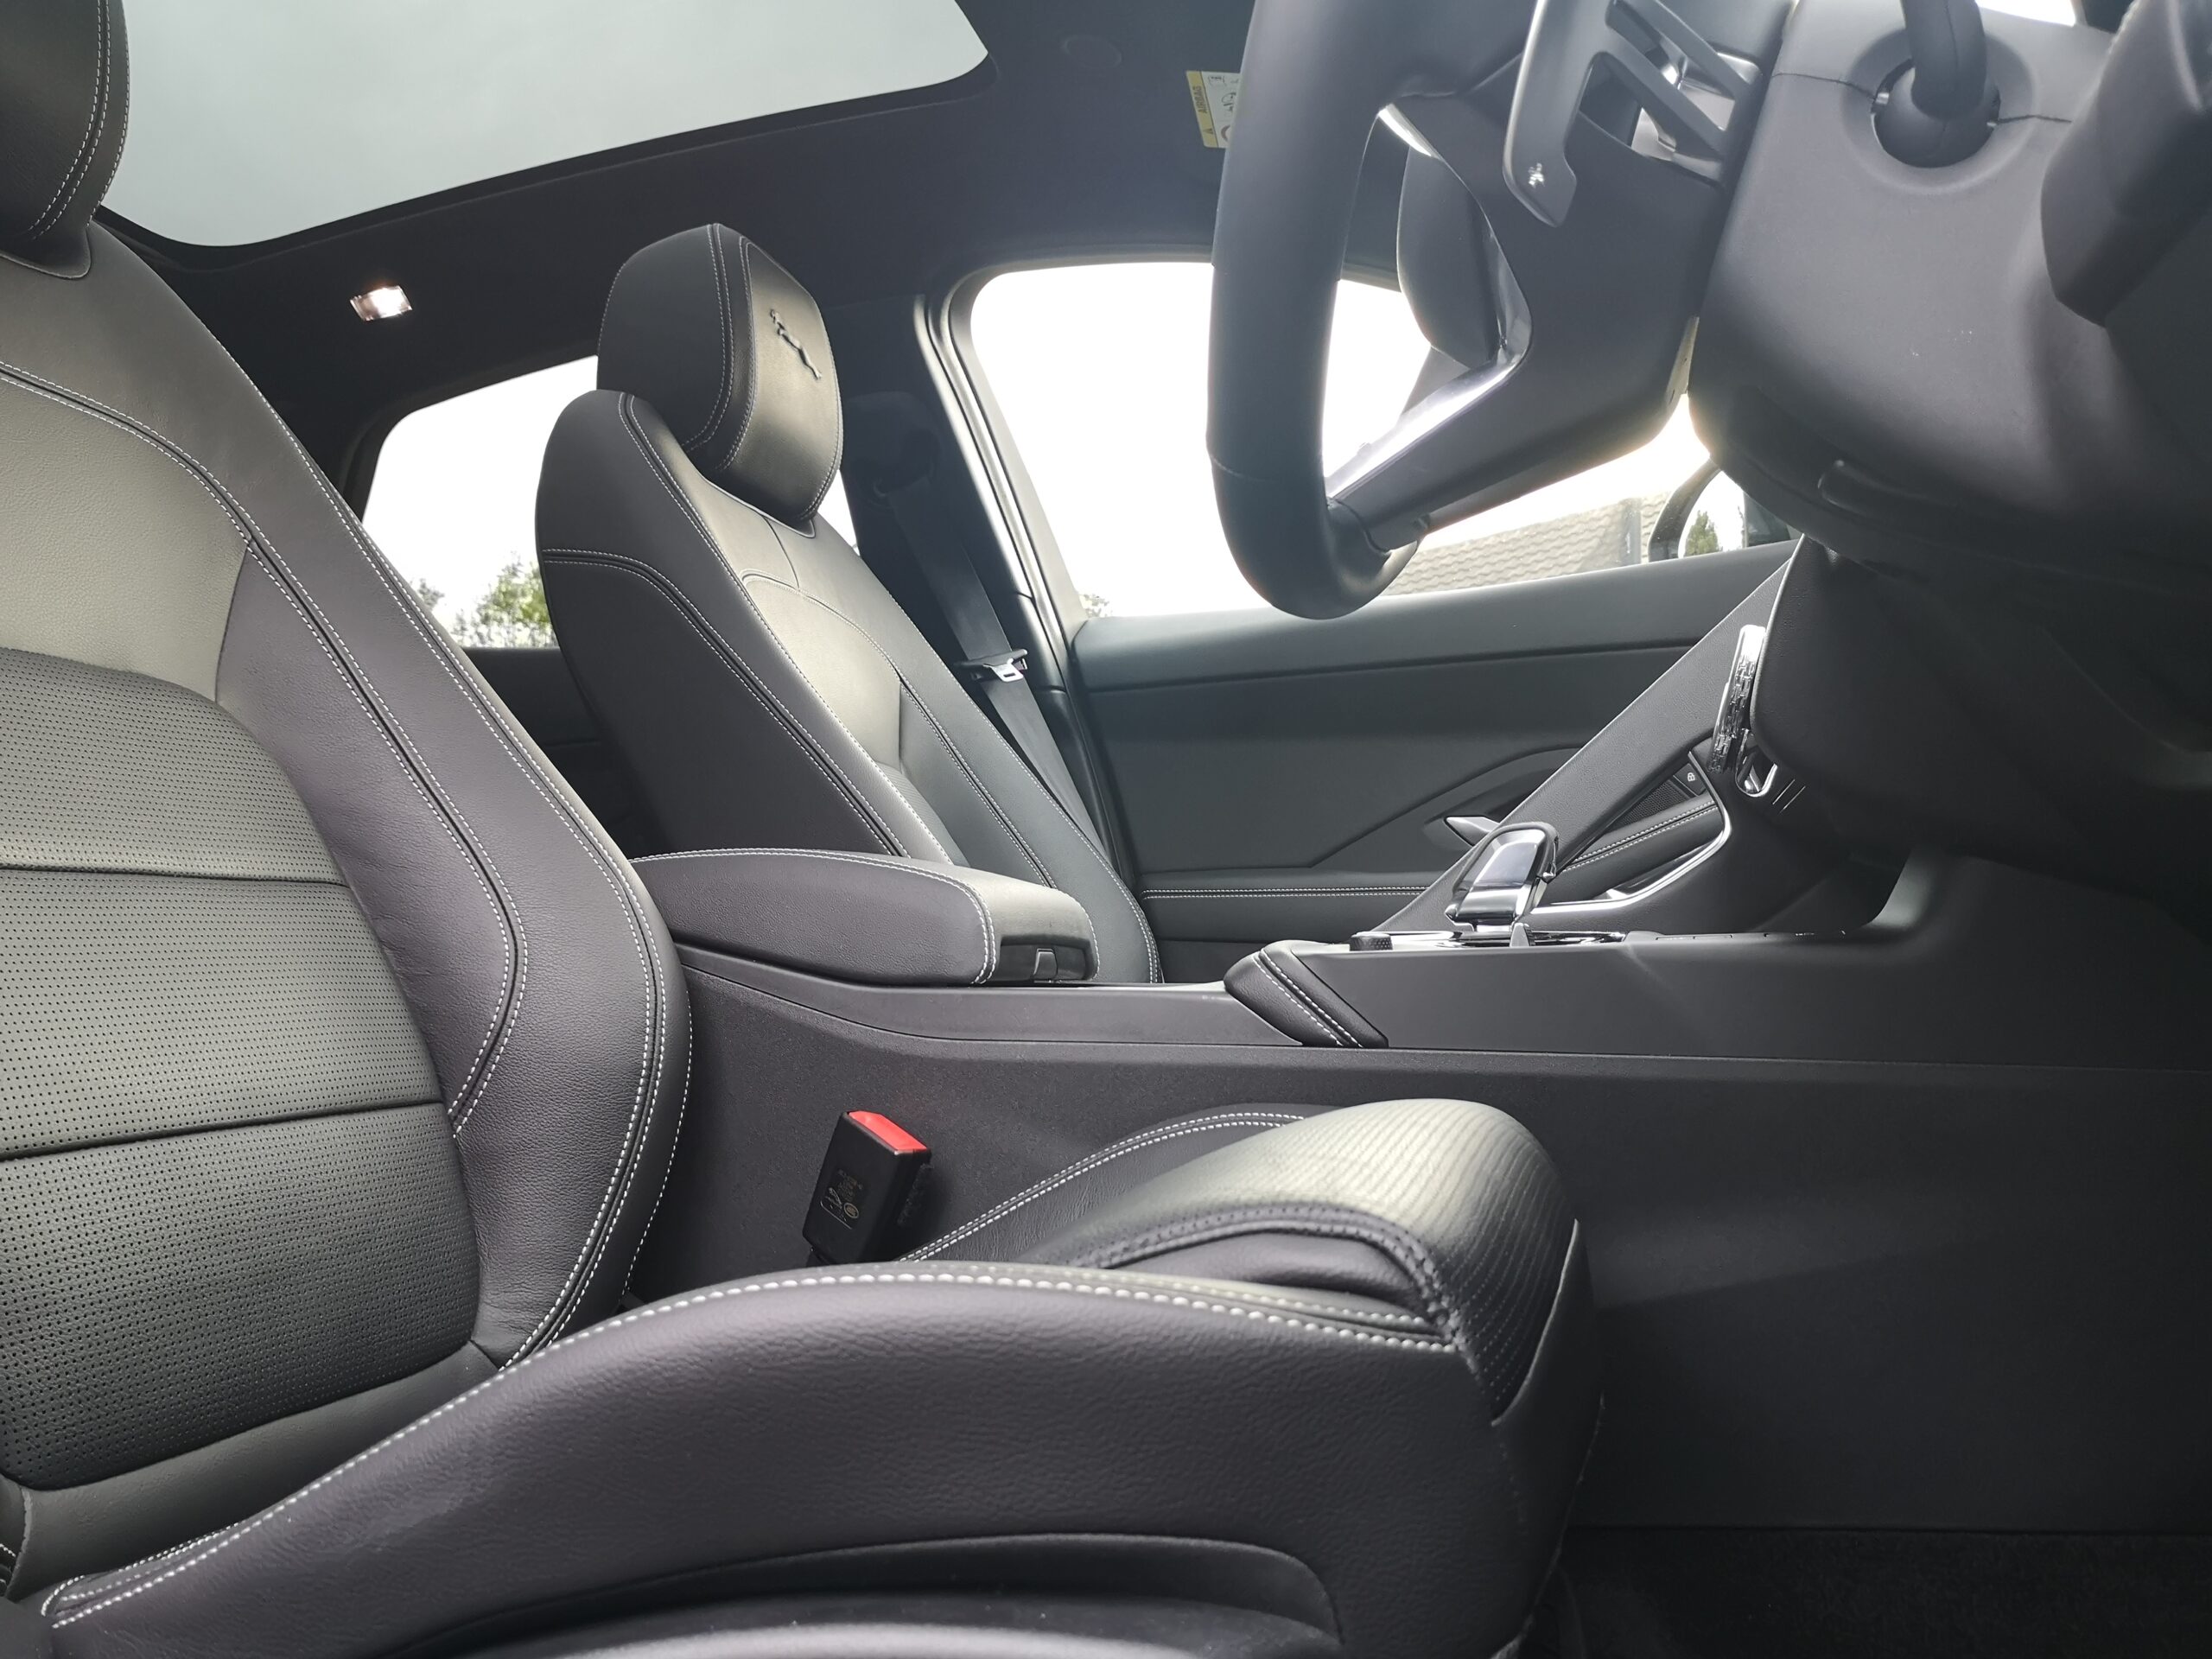 Jaguar ePace seats